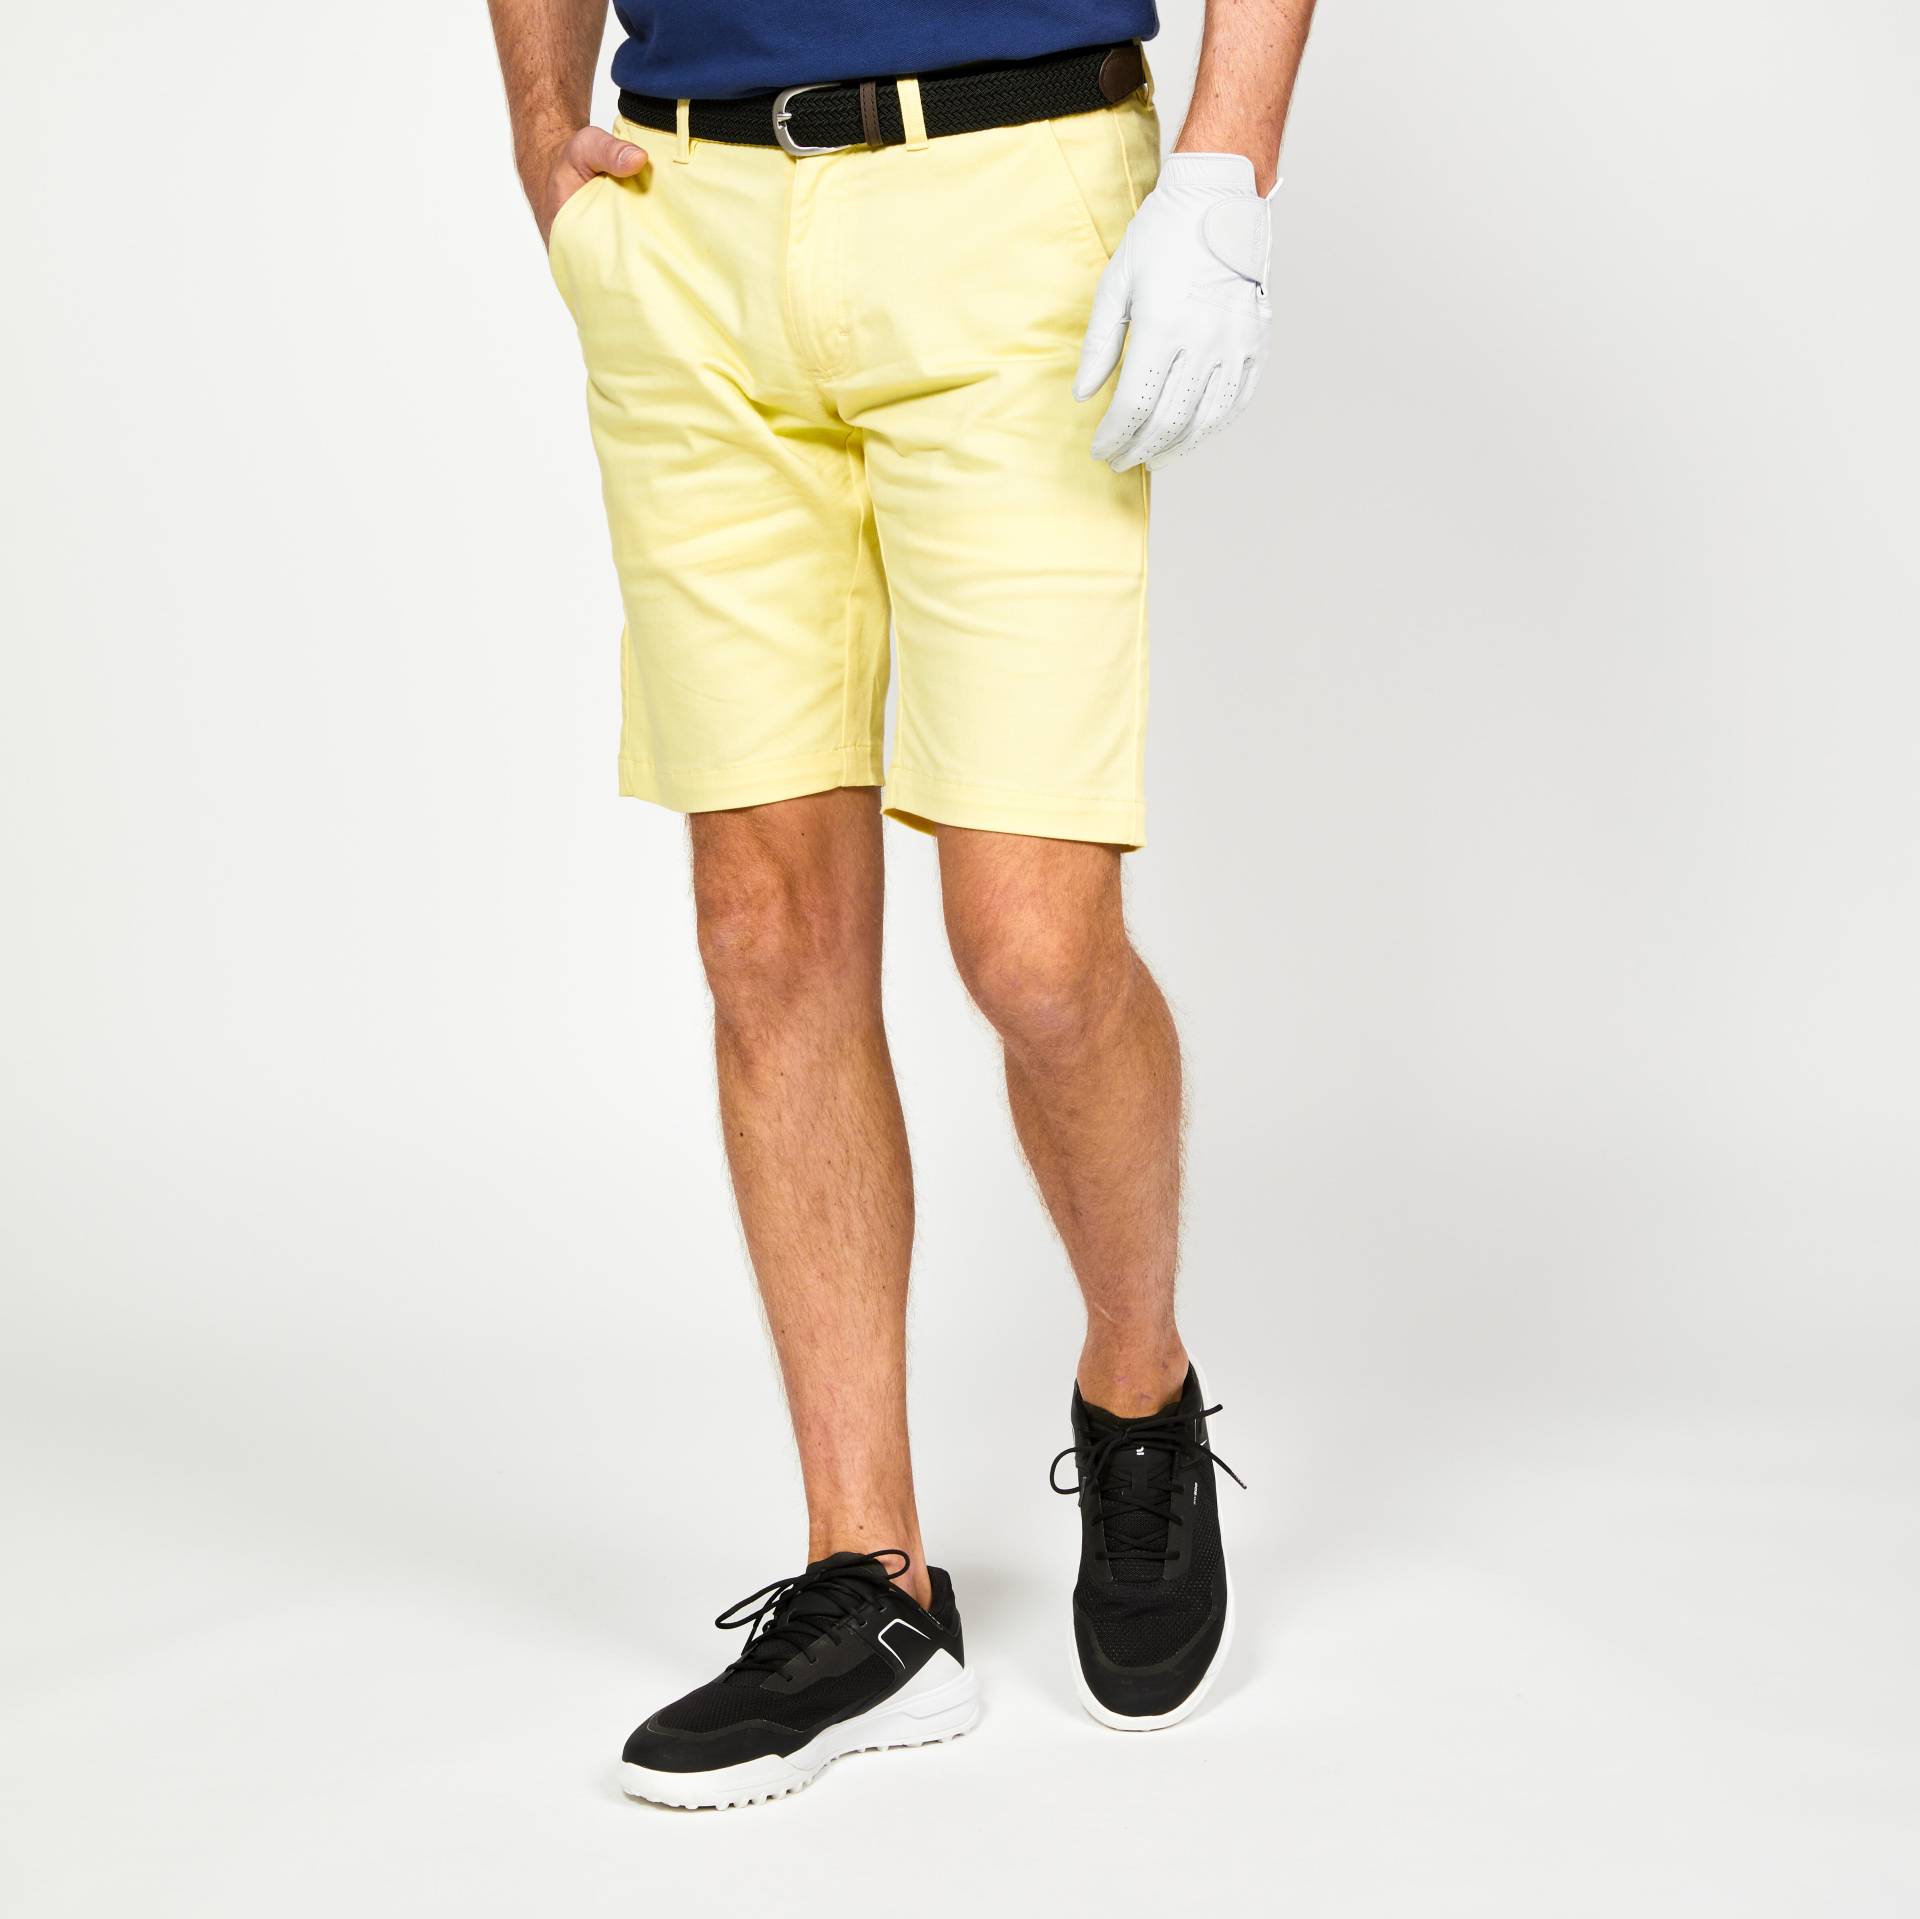 Herren Golf Bermuda Shorts Baumwolle - MW500 hellgelb von INESIS